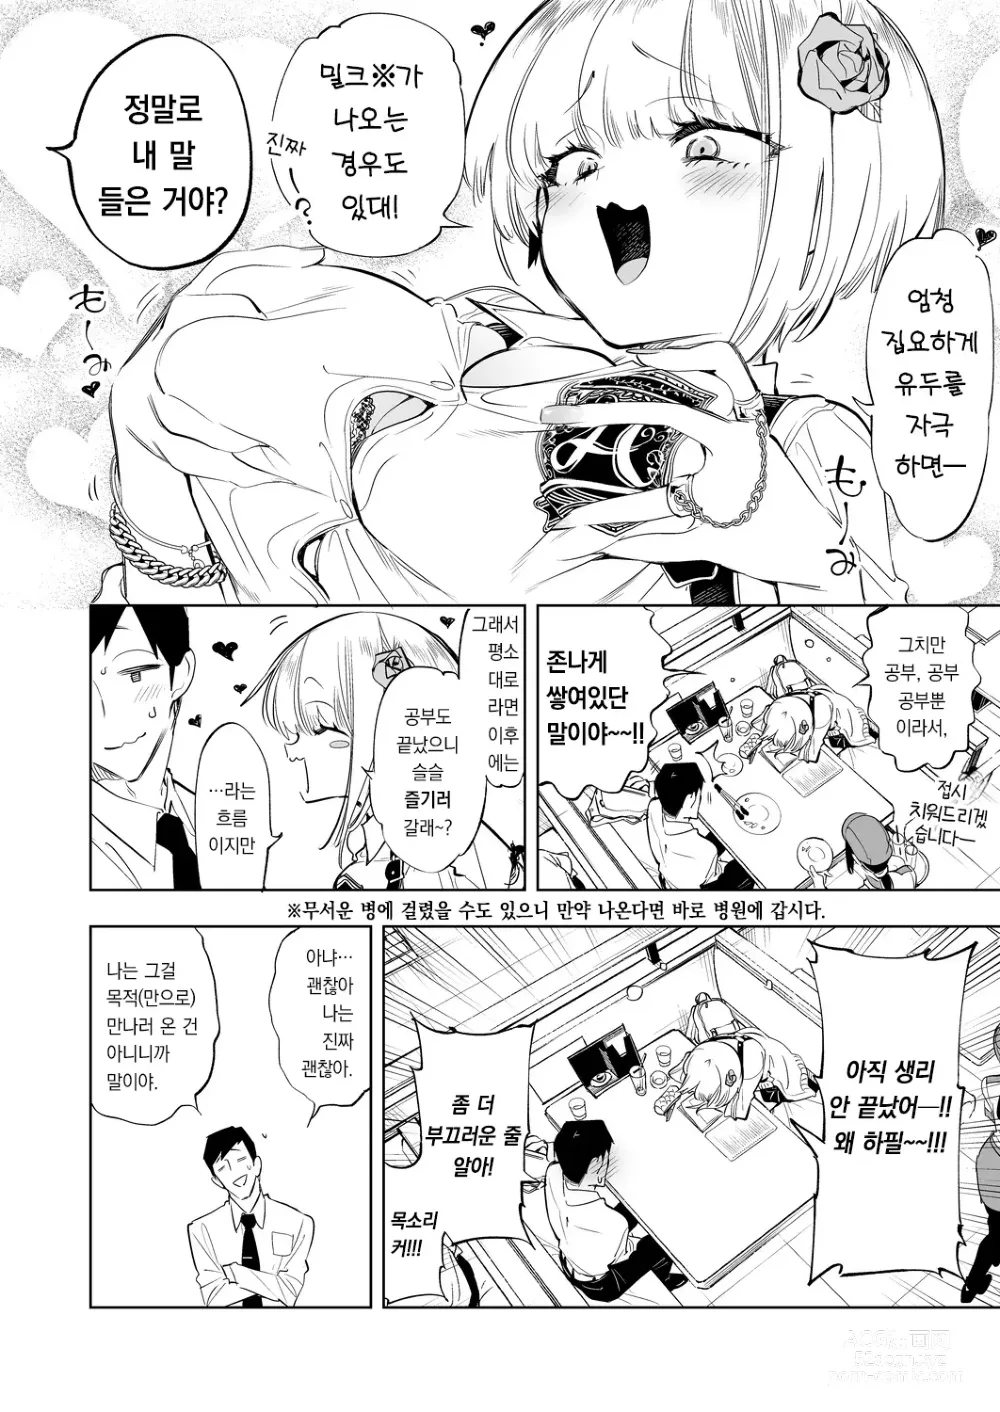 Page 6 of doujinshi 오빠, 우리들이랑 커피 마시러 갈래? 3